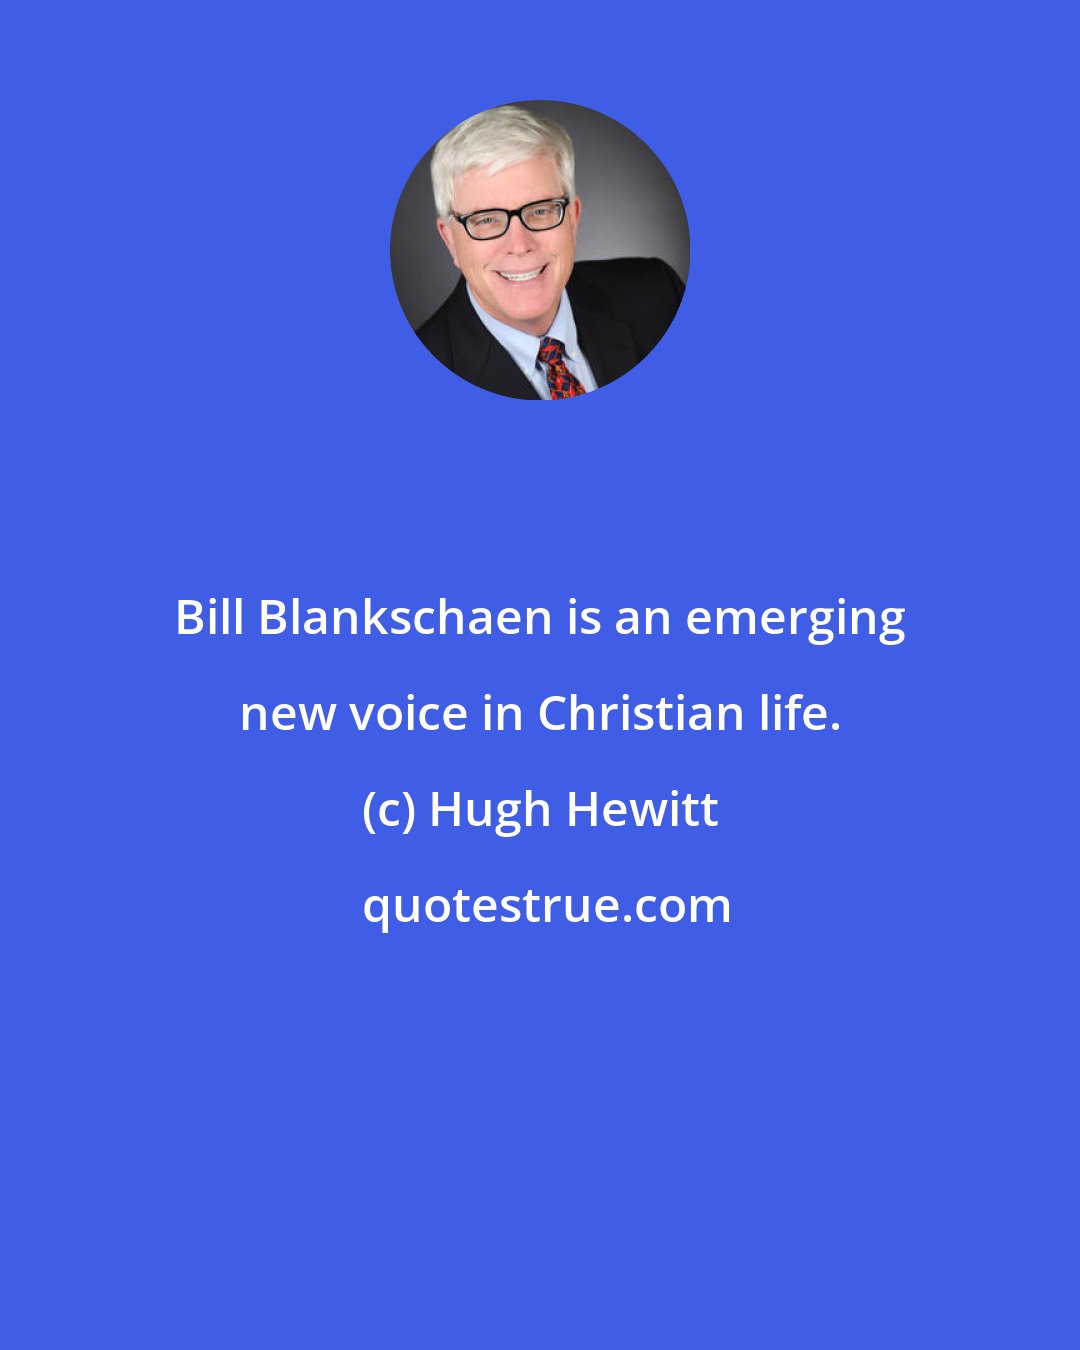 Hugh Hewitt: Bill Blankschaen is an emerging new voice in Christian life.